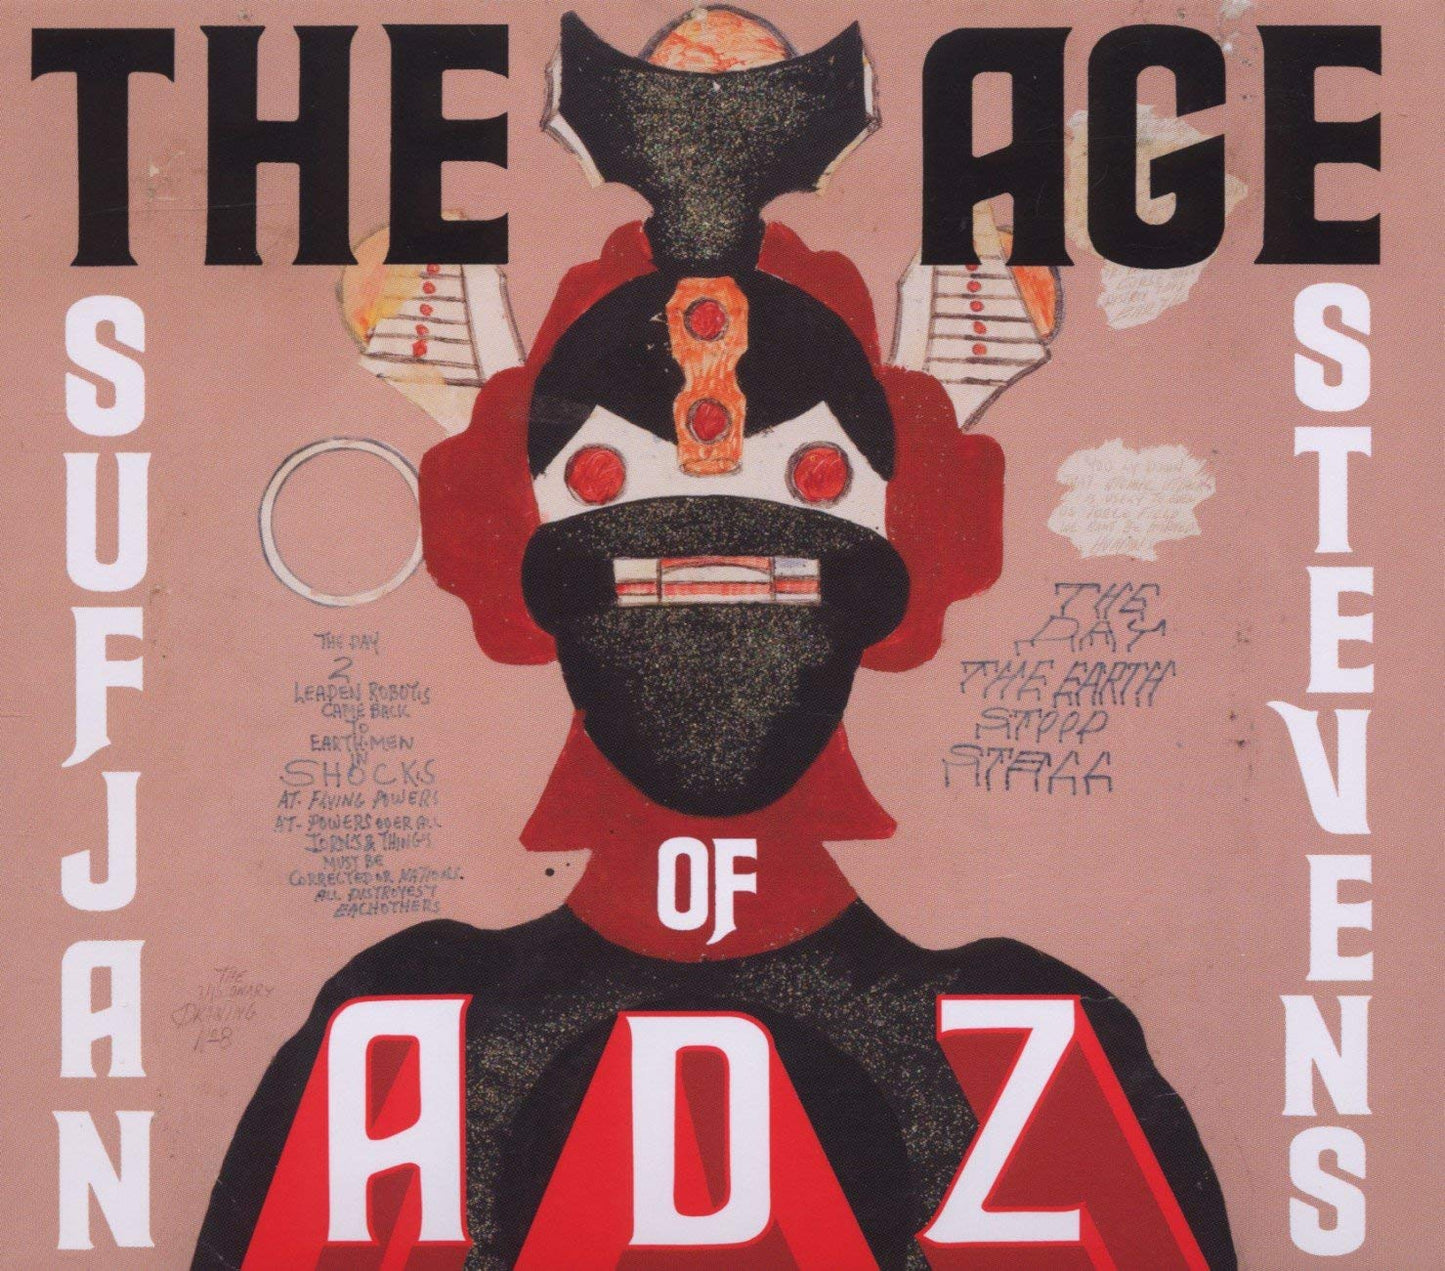 Sufjan Stevens - The Age of Adz